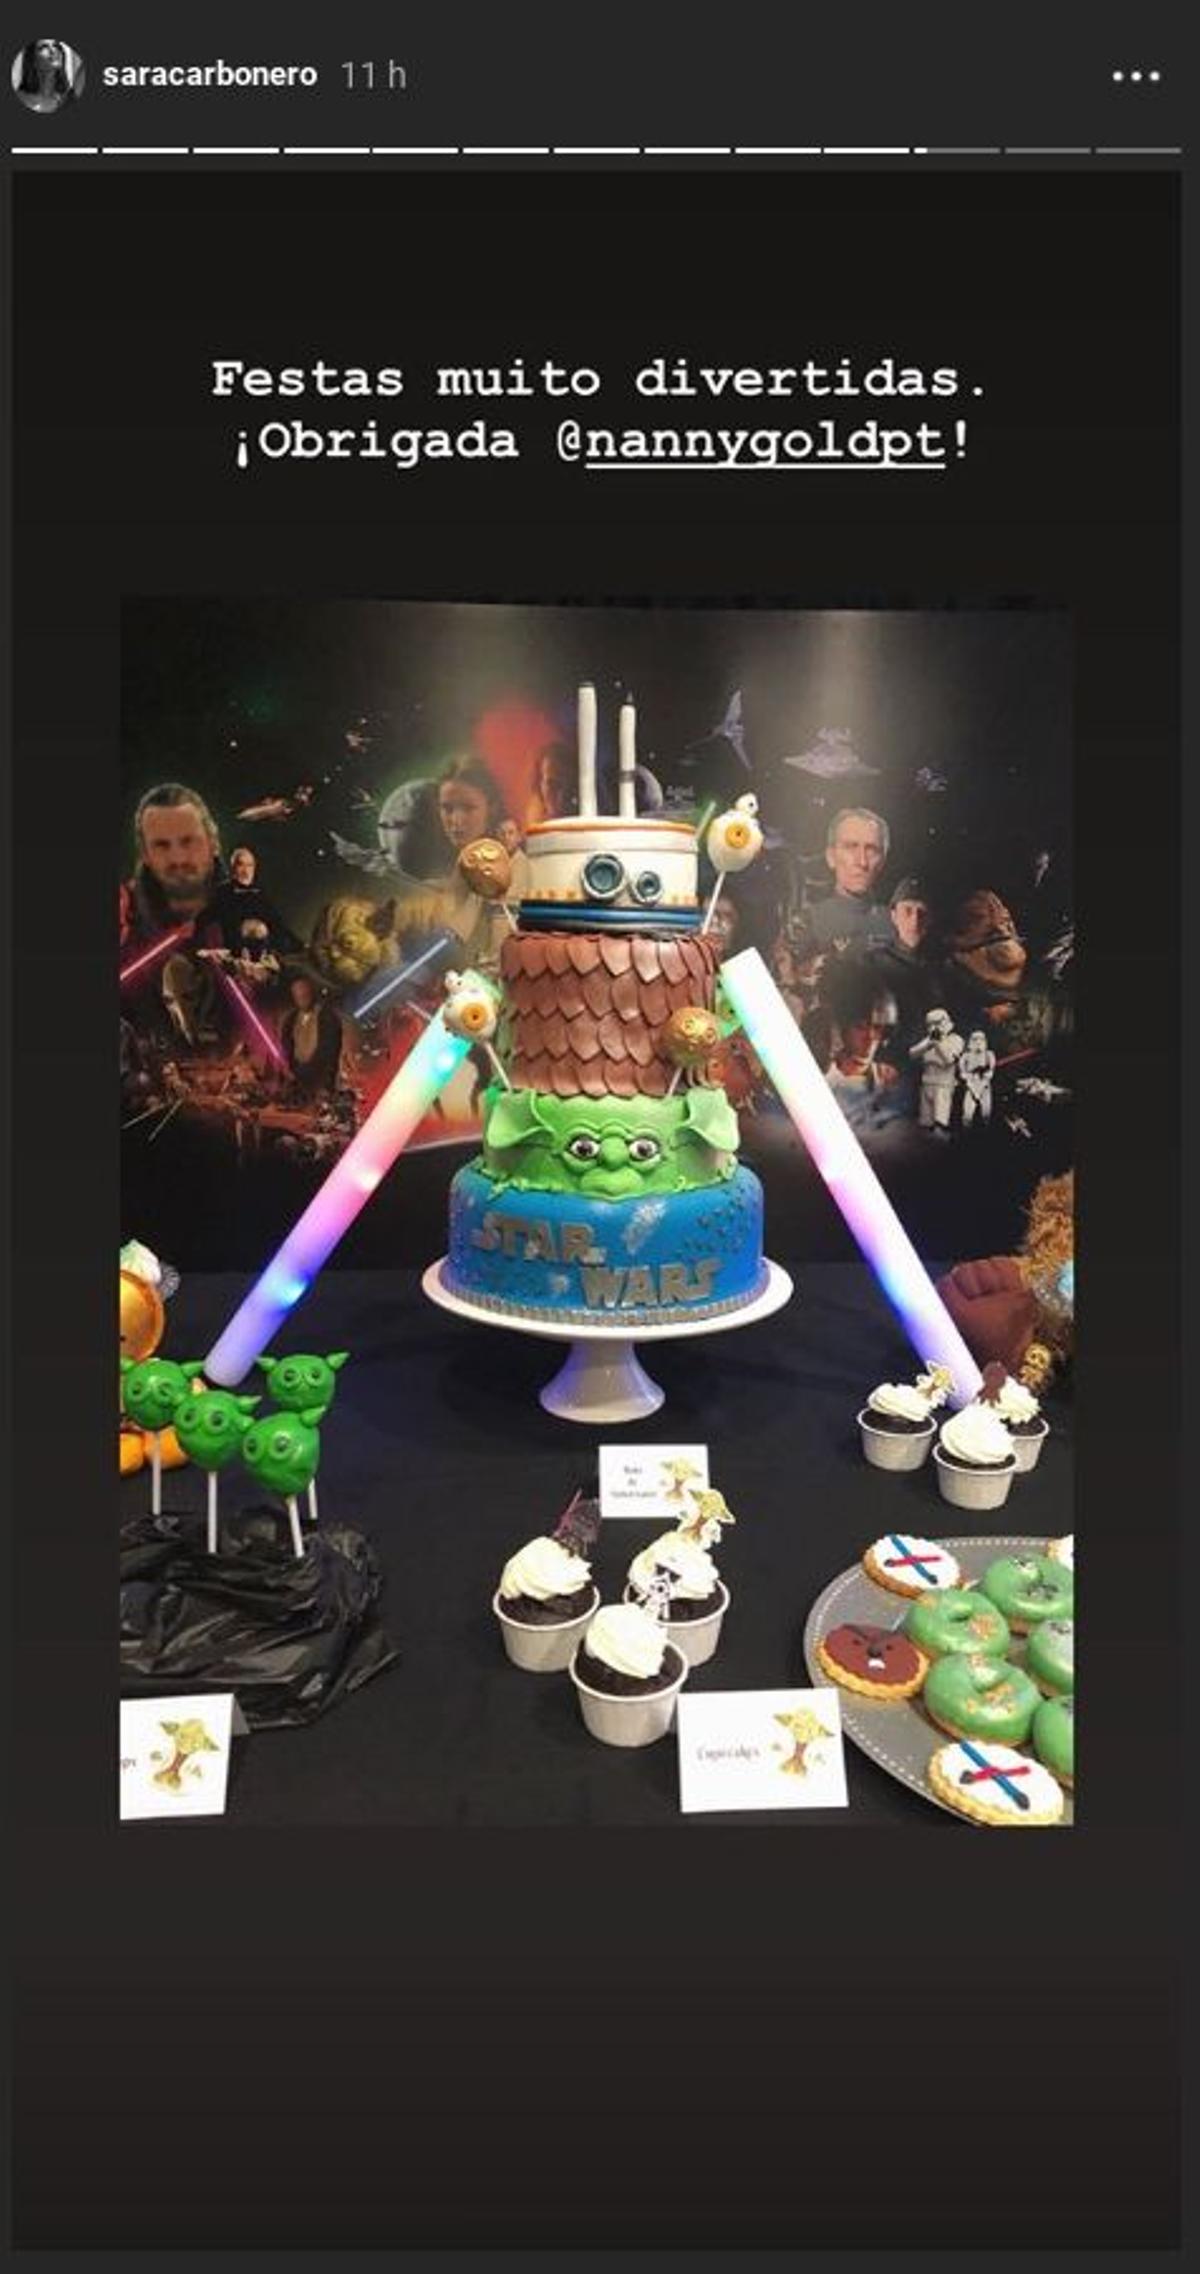 Tarta de cumpleaños basada en Star Wars para Martín Casillas en su quinto cumpleaños